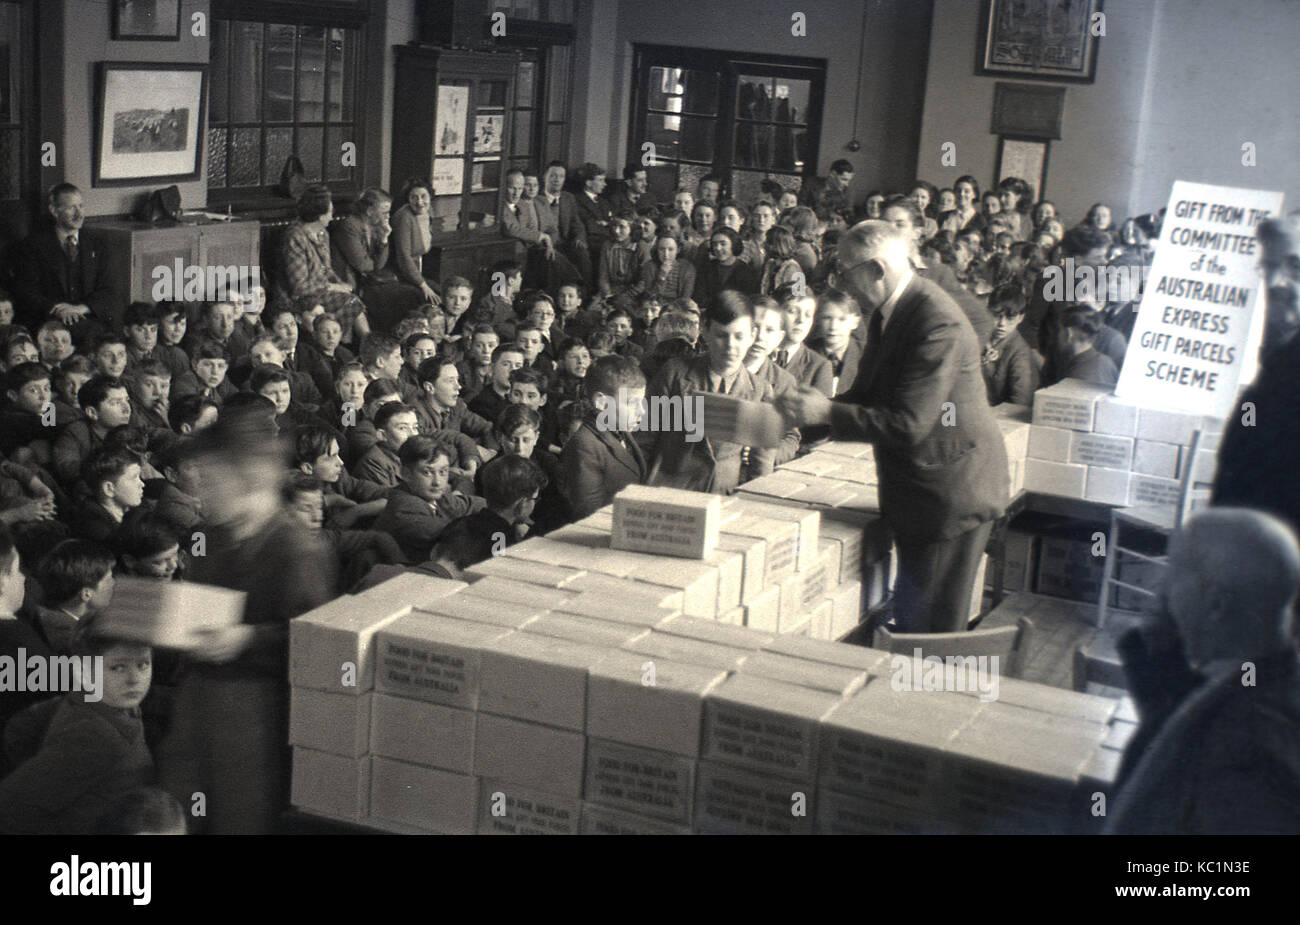 1948, post-ww2 la Gran Bretagna con il razionamento alimentare, foto storiche, "Cibo per la Gran Bretagna", Scuola di inglese alunni ricevere pacchi di alimenti provenienti da Australia, come un dono da parte del comitato della Australian Express pacchi regalo regime. Foto Stock